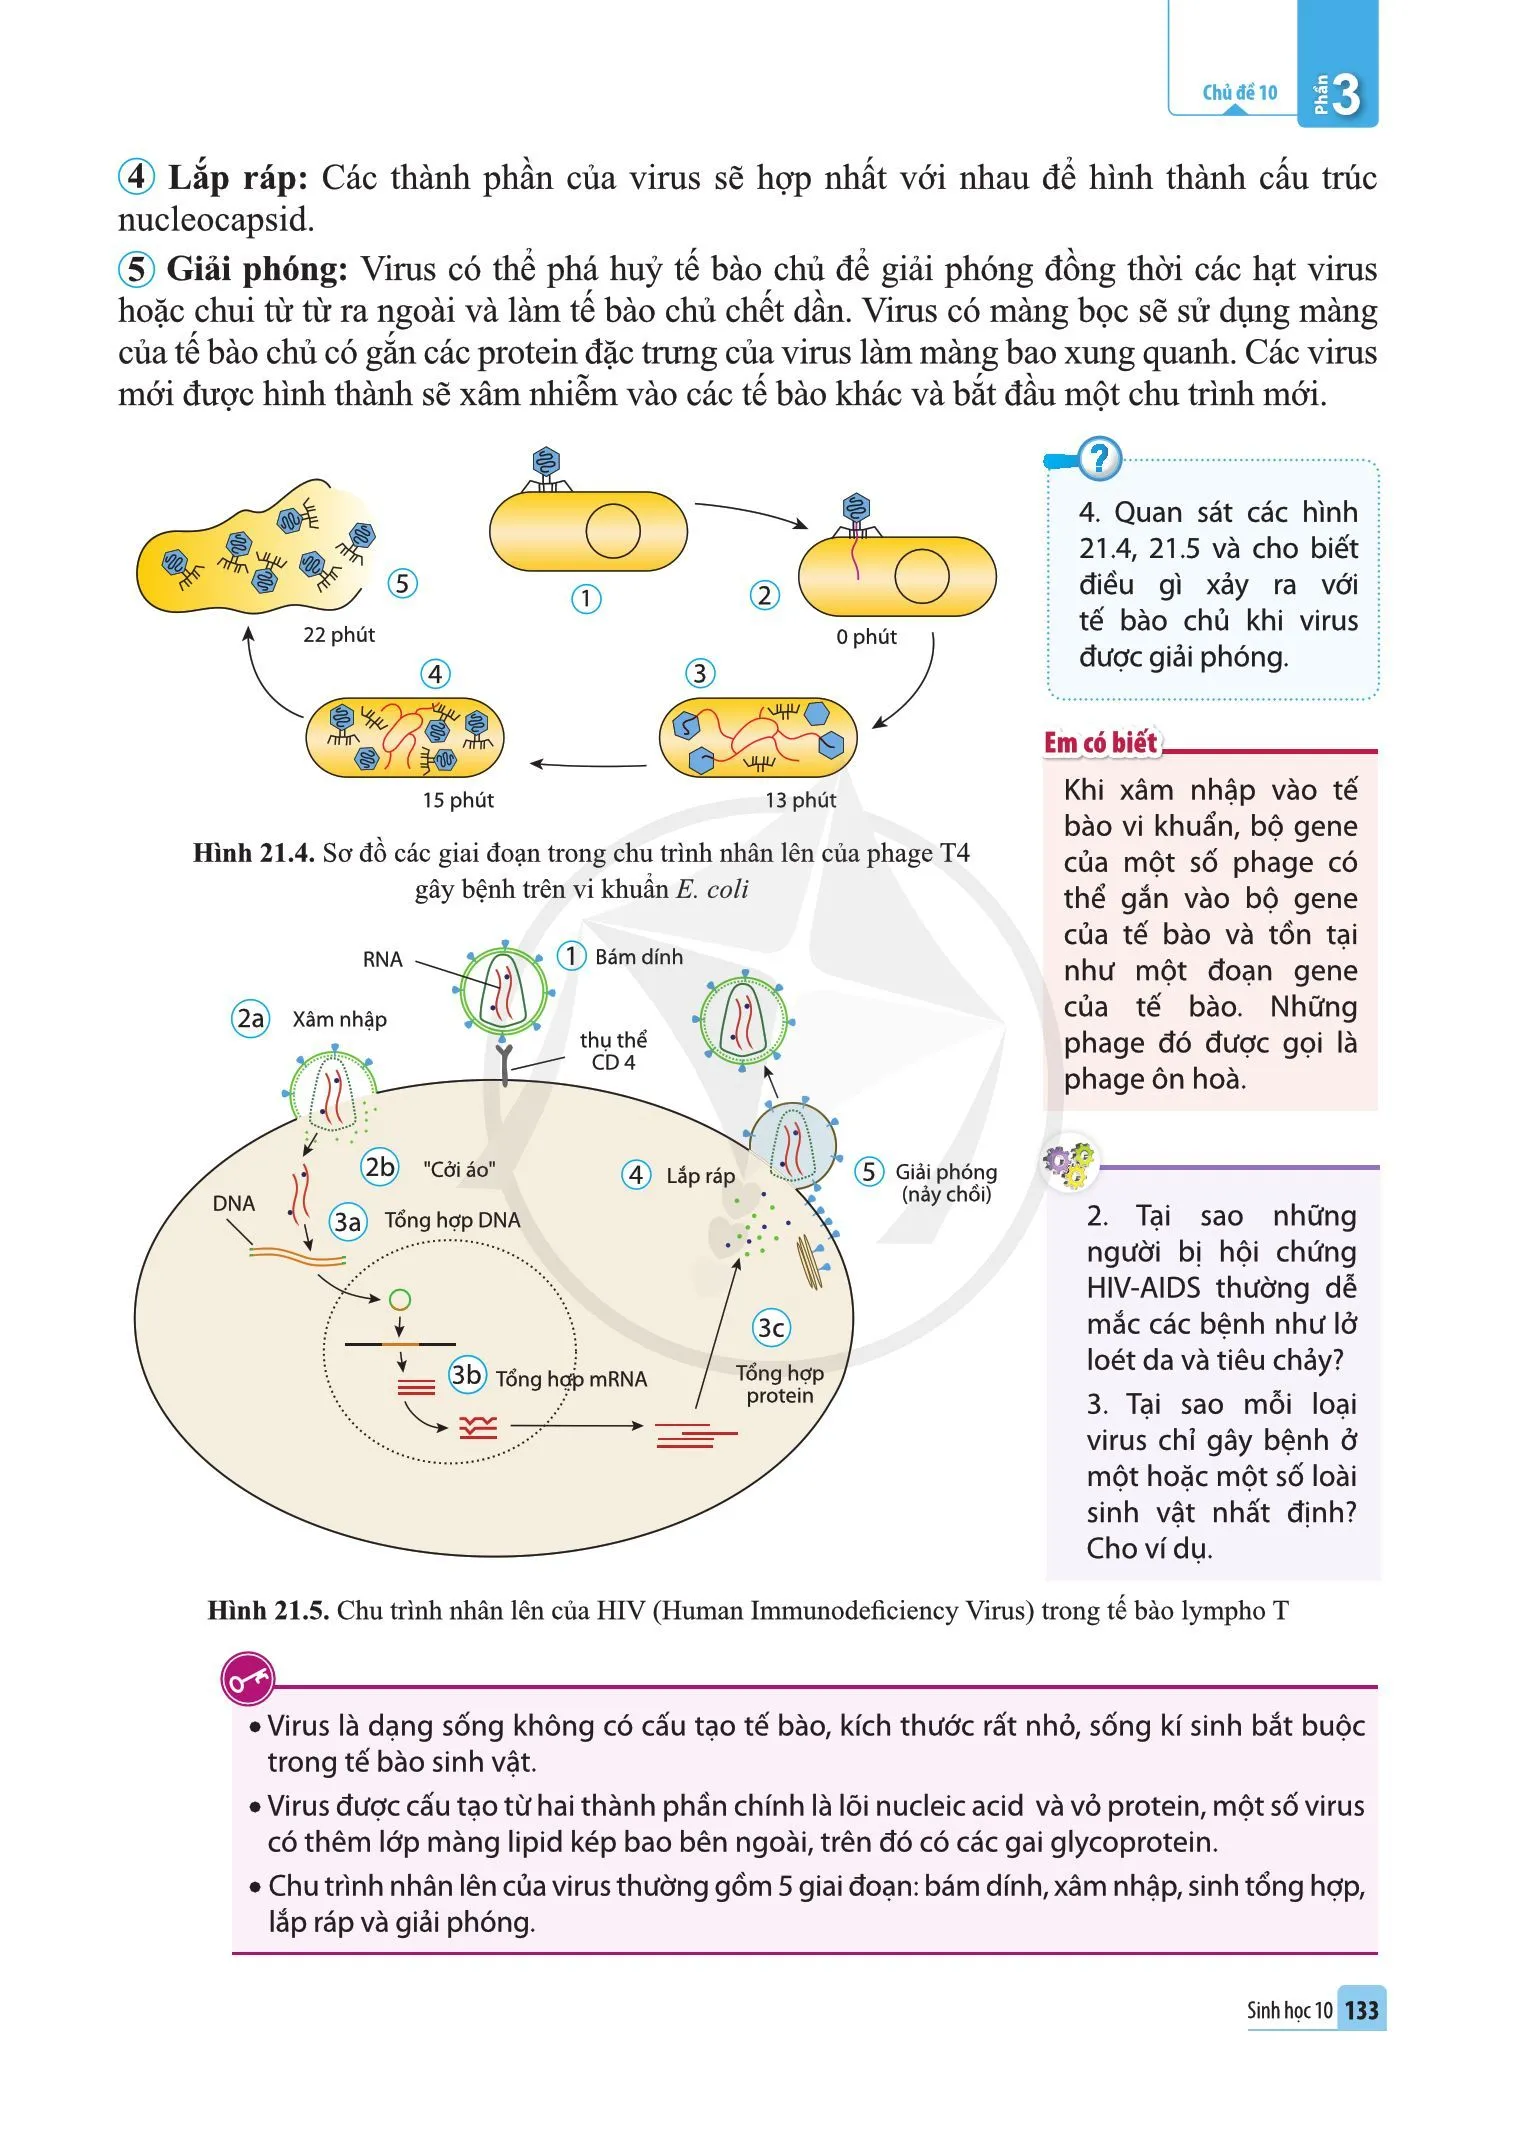 Bài 21. Khái niệm, cấu tạo và chu trình nhân lên của virus